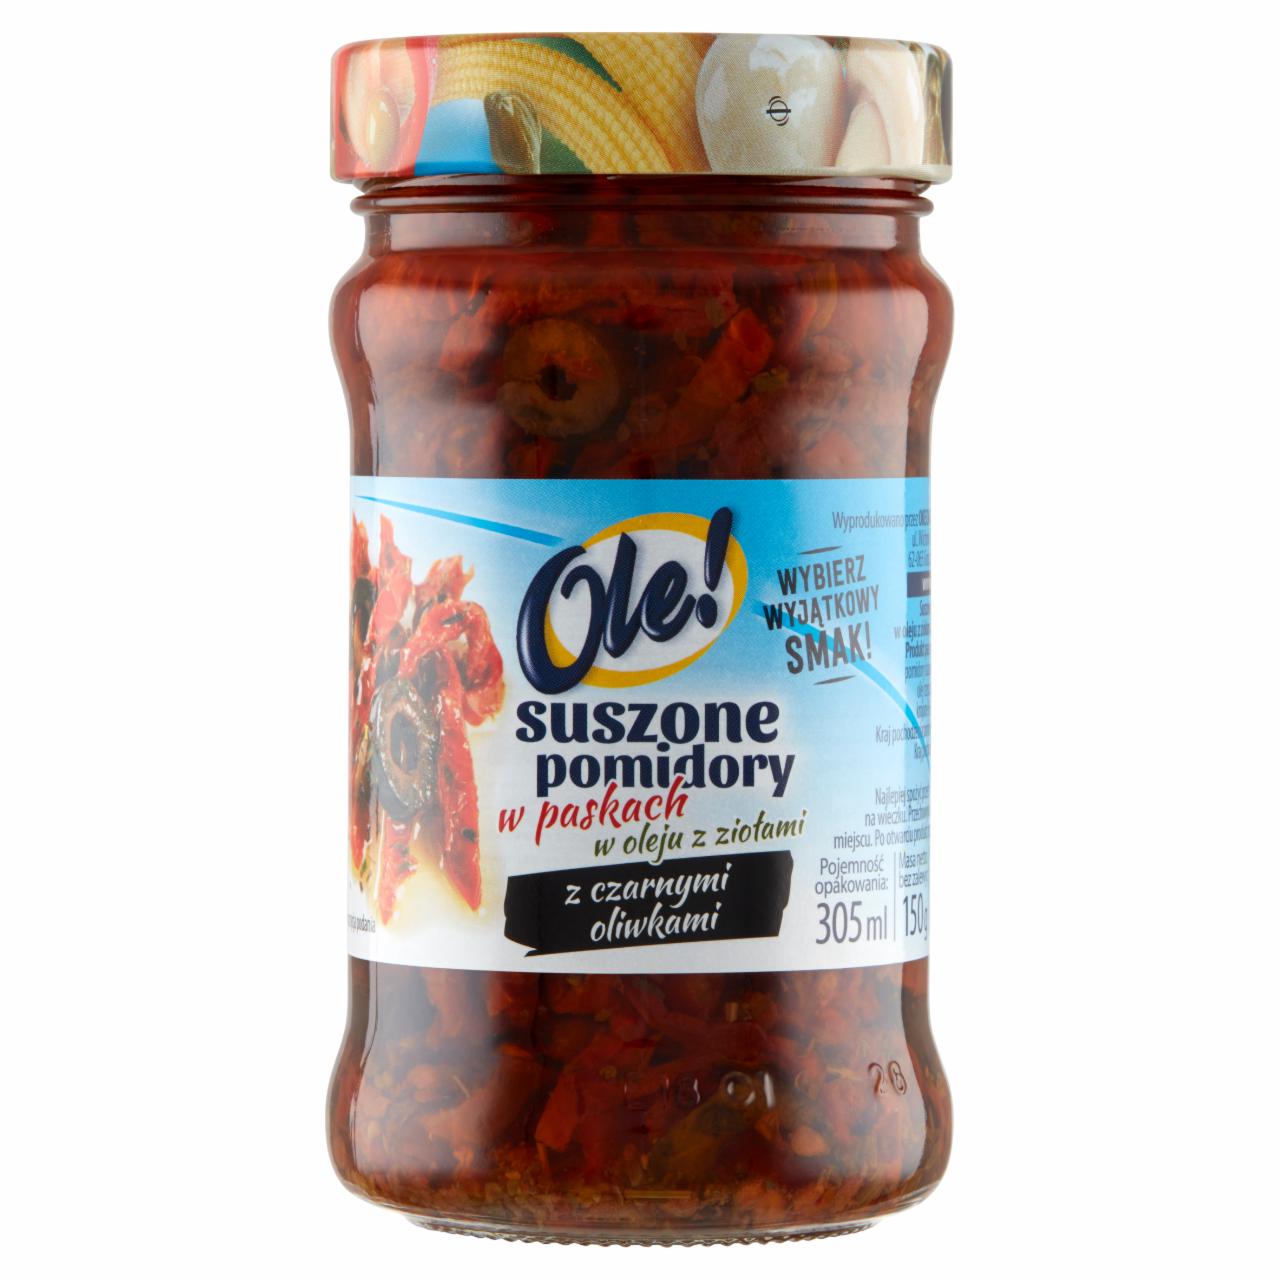 Zdjęcia - Ole! Suszone pomidory w paskach w oleju z ziołami z czarnymi oliwkami